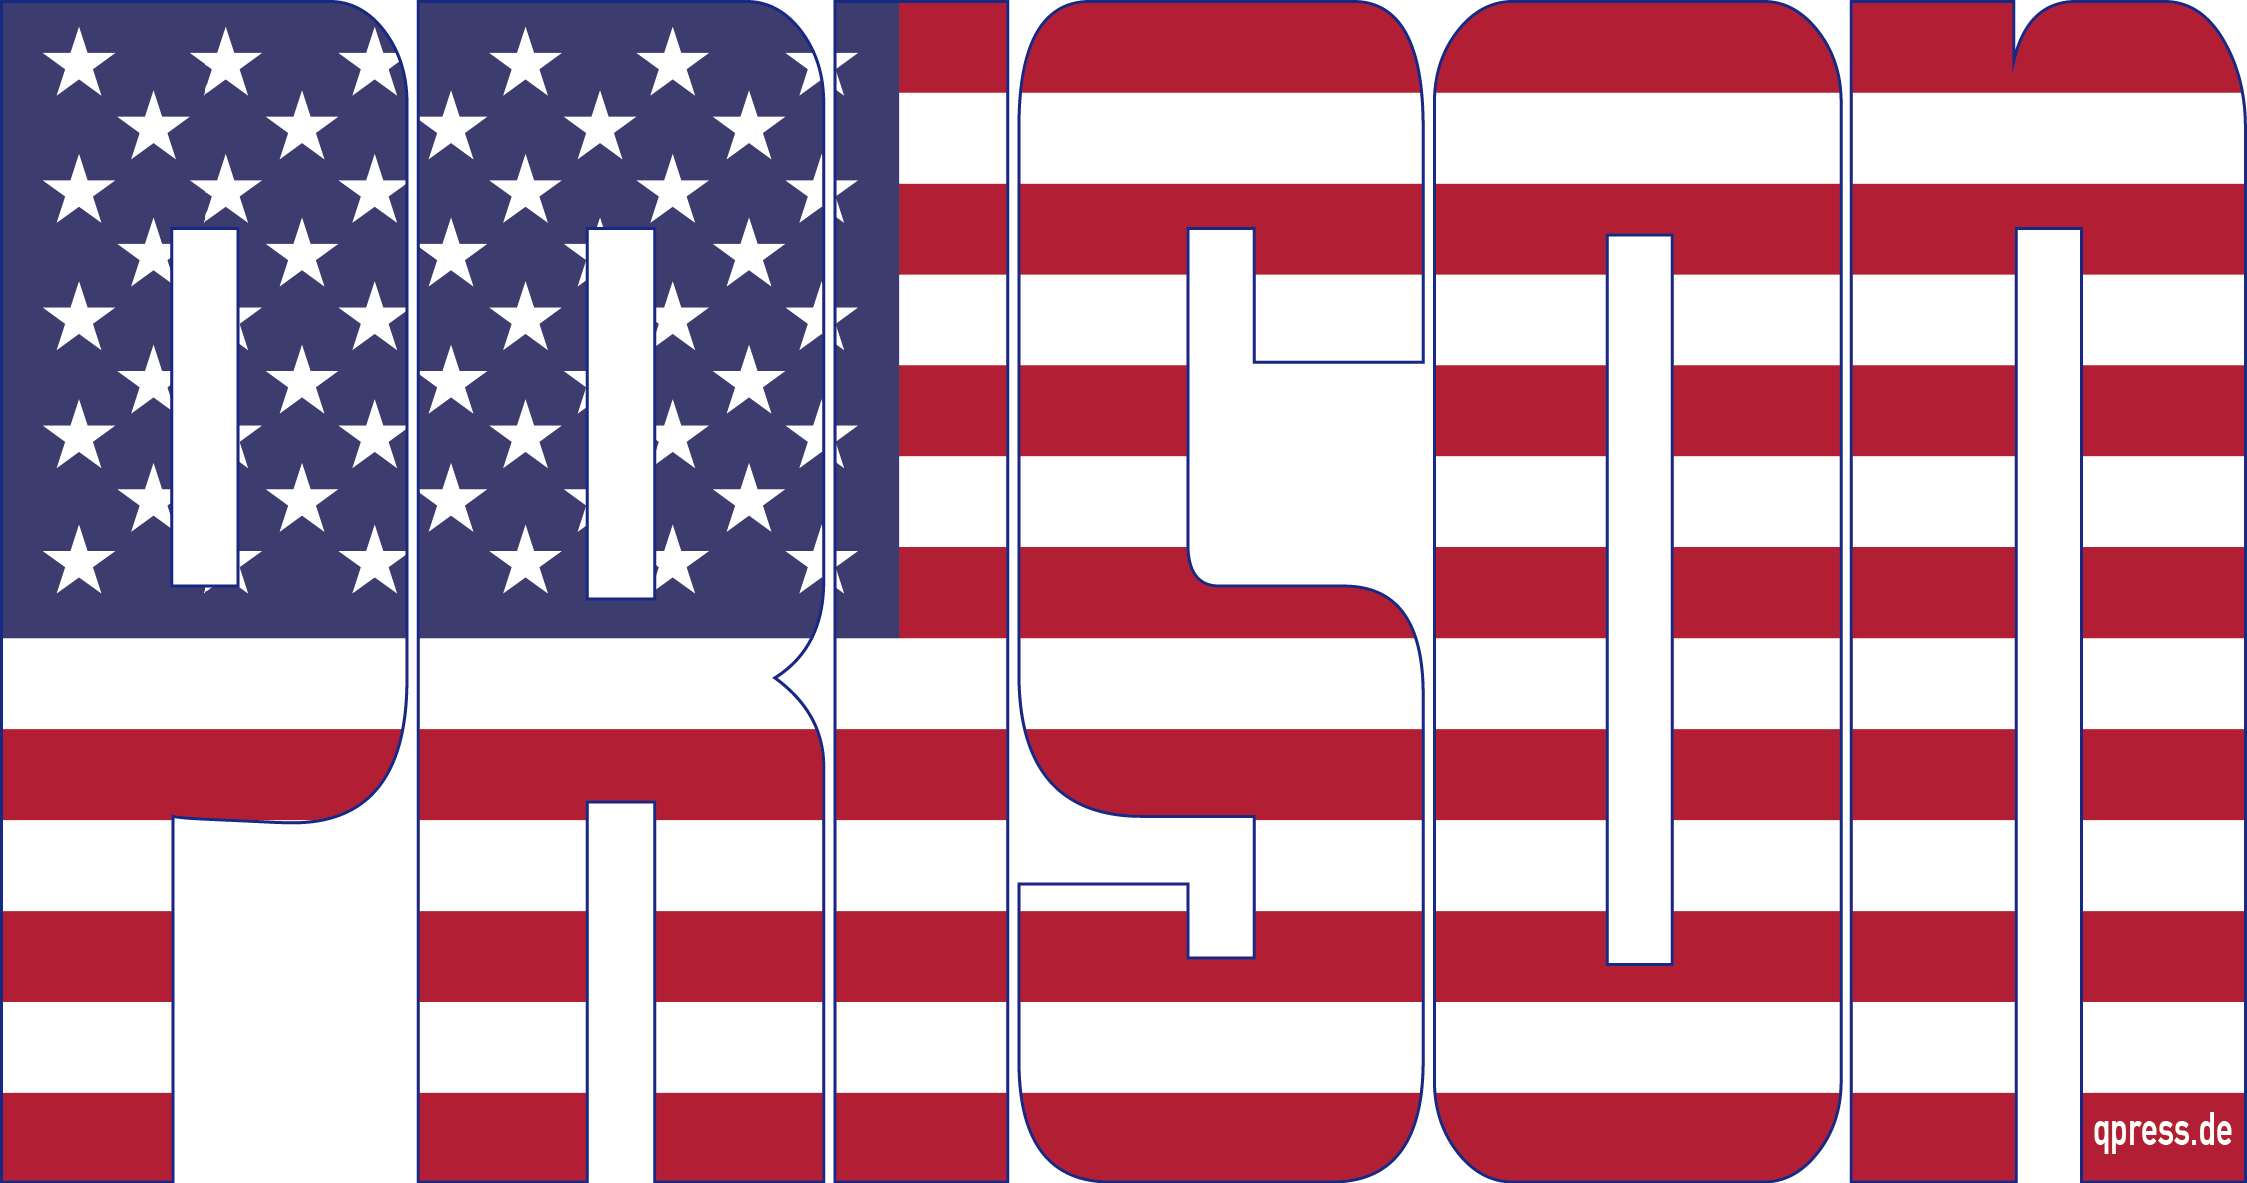 USA Prison Flag Gefaengnisstaat inmates Inhaftierungsrate Knast Jail Demokratie Vergleich Rechtsstaat in weiss